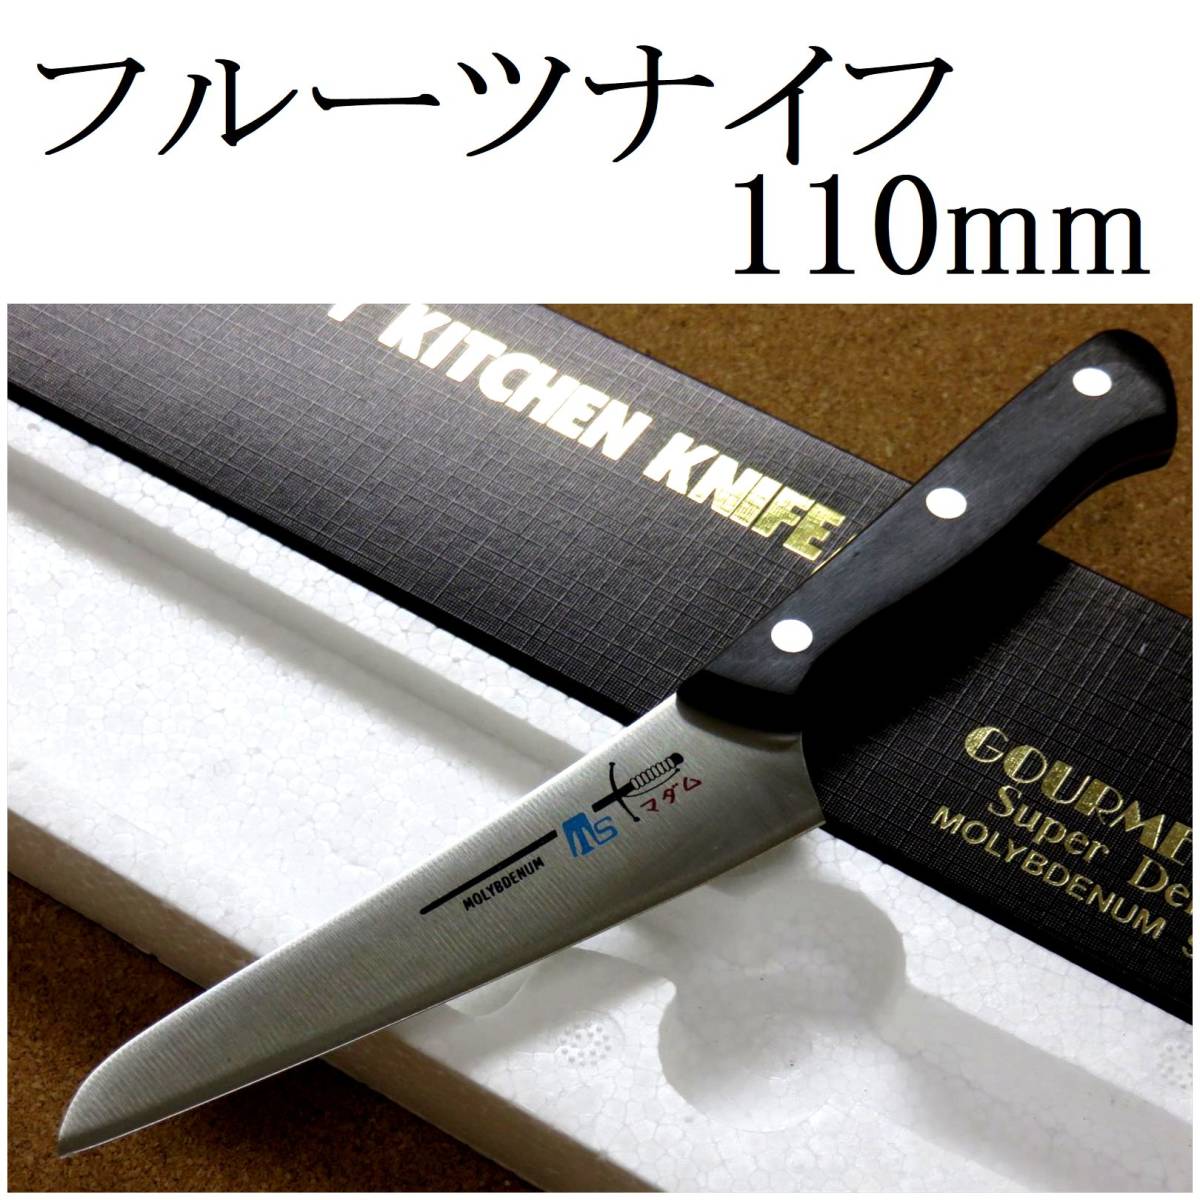 包丁 フルーツナイフ 11cm (110mm) 関の刃物 TSマダム AUS-8 クロムモリブデン ステンレス 果物包丁 野菜 皮むき 両刃 小型ナイフ 日本製